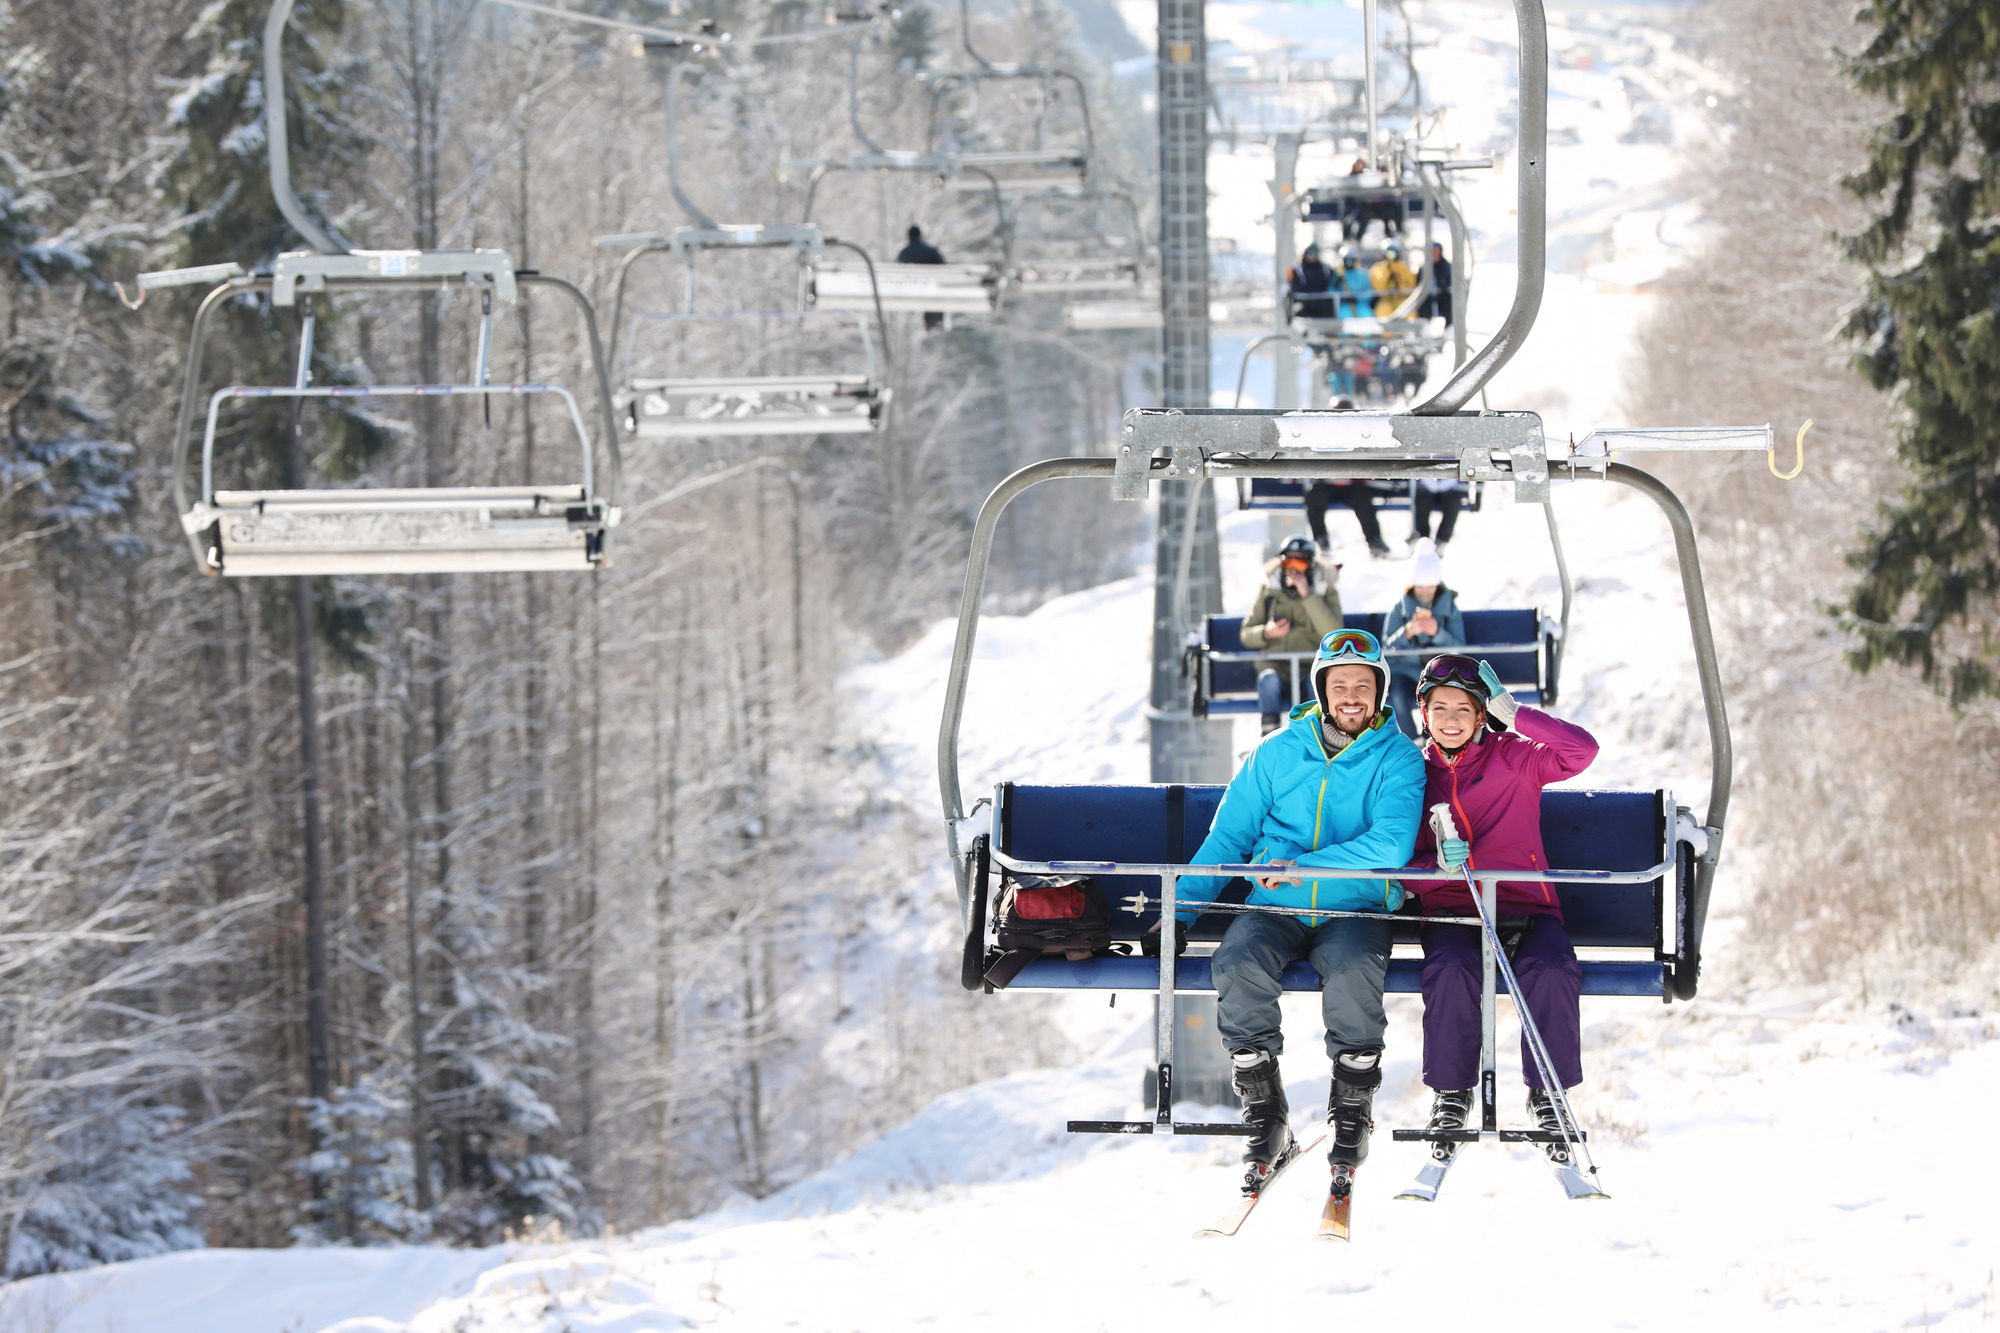 Quando chiudono le piste da sci?